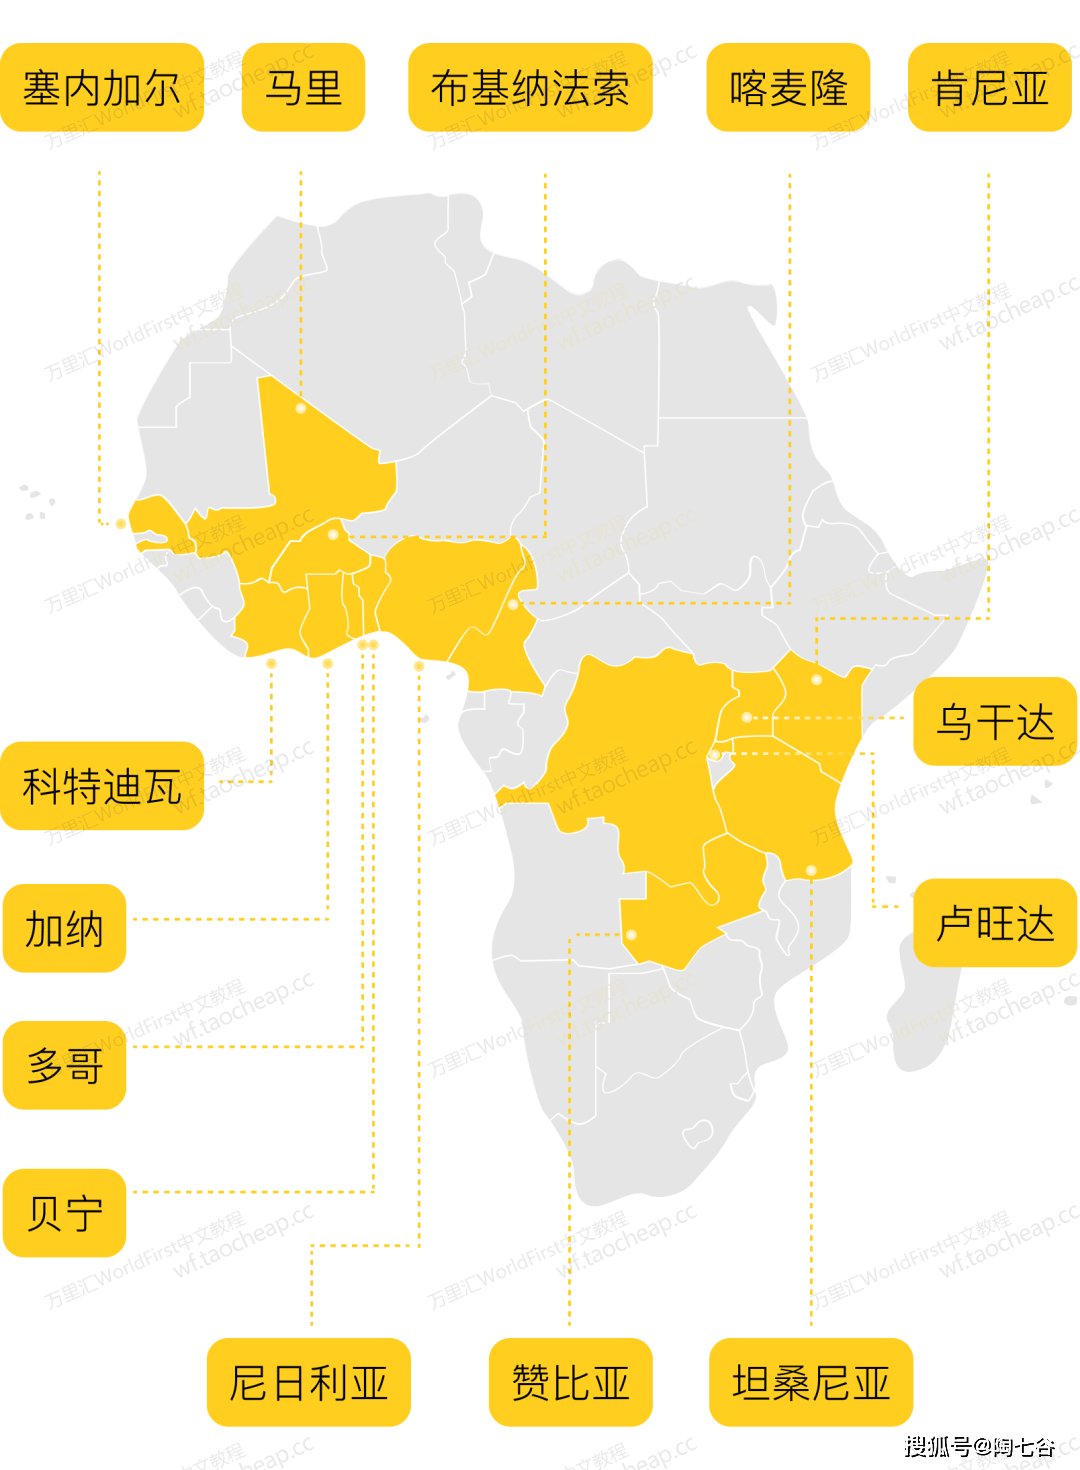 加纳,卢旺达,赞比亚,布基纳法索,贝宁,多哥,马里15个国家的本币收款